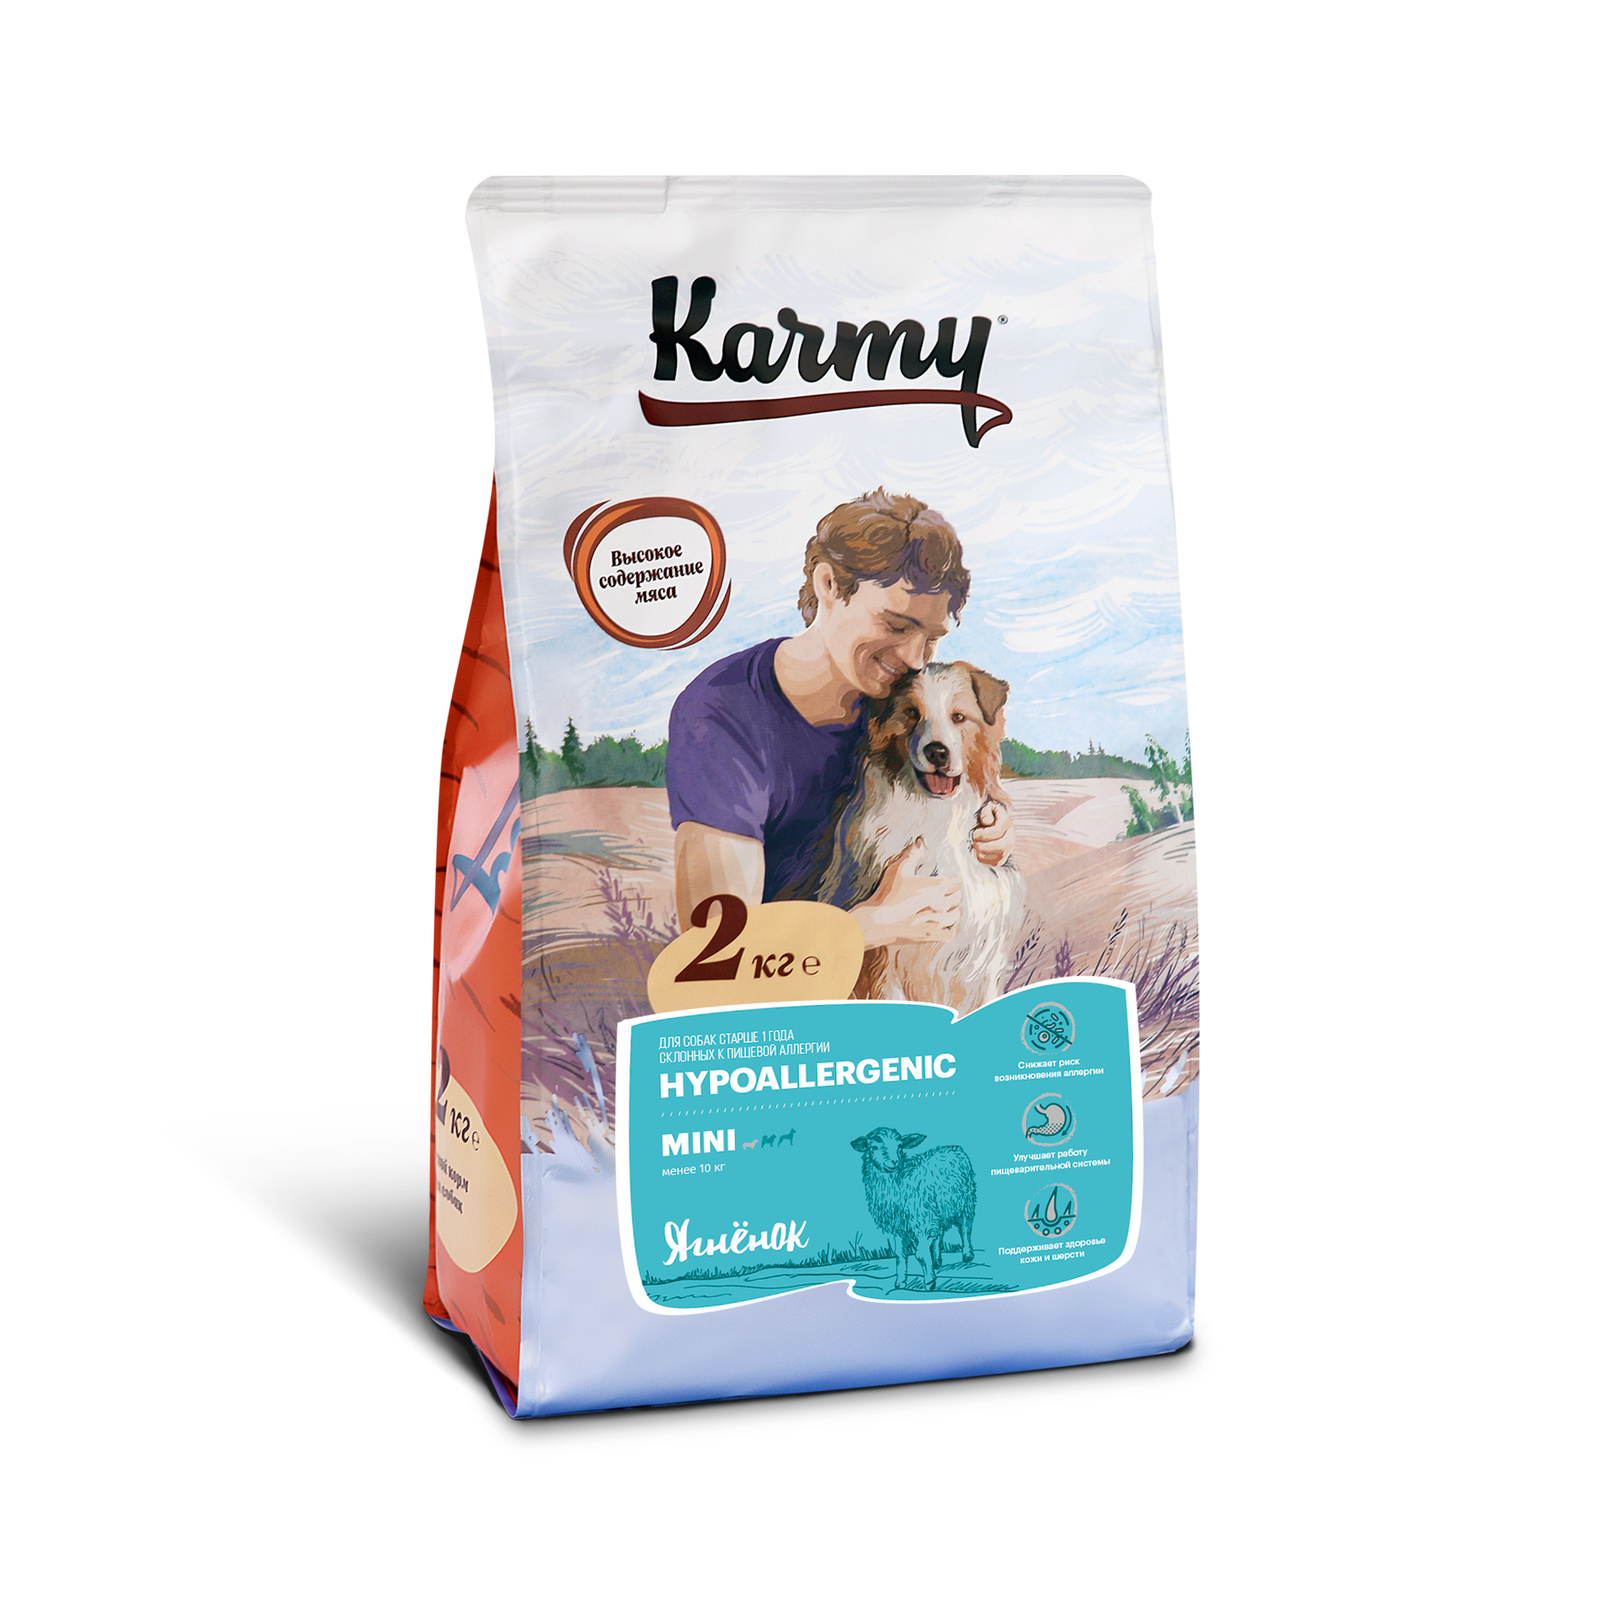 Karmy Корм Karmy сухой корм для собак мелких пород гипоаллергенный с ягненком (2 кг) karmy корм karmy сухой корм для собак мелких пород гипоаллергенный с ягненком 2 кг